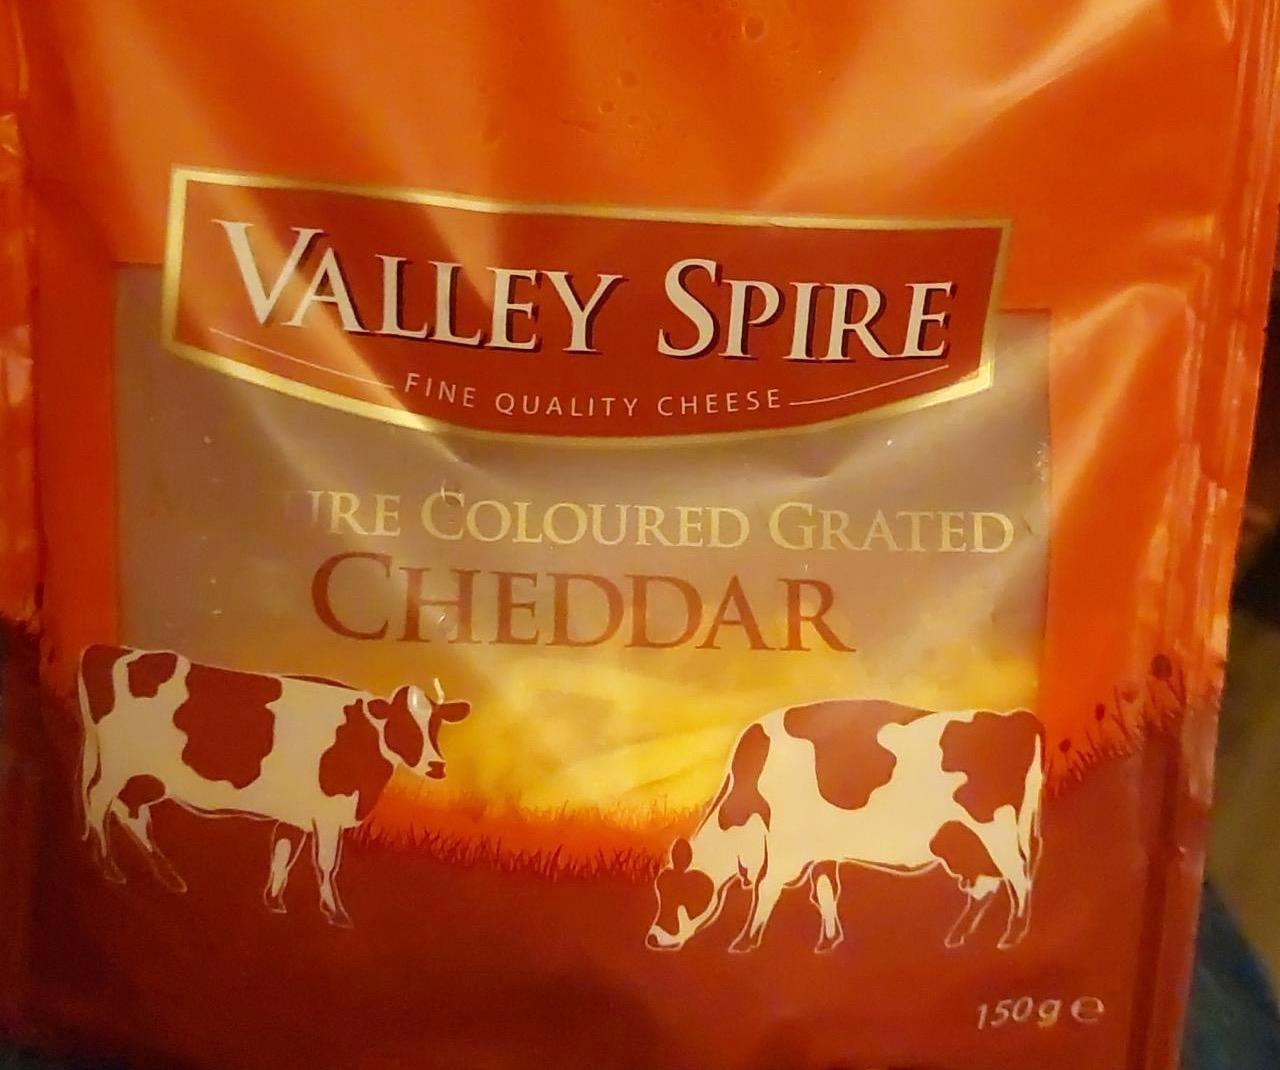 Képek - Cheddar reszelt Valley Spire